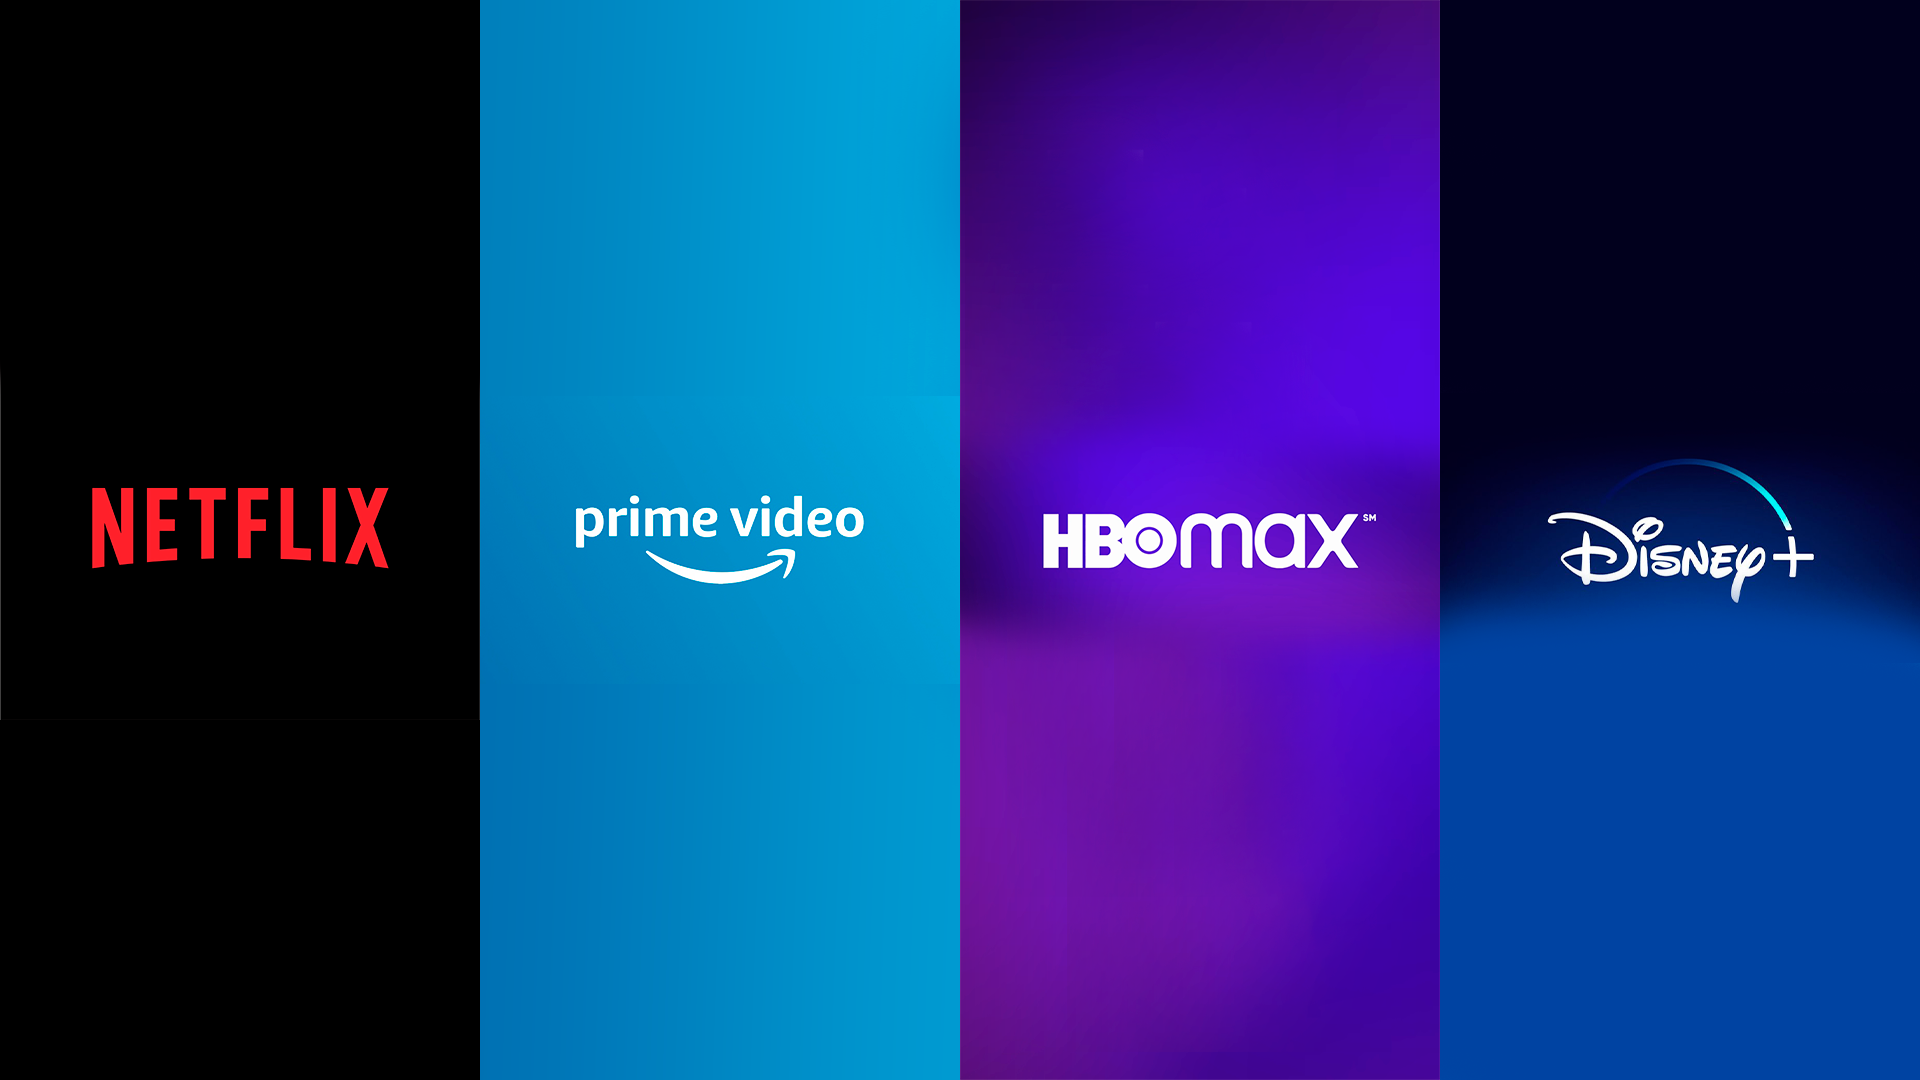 HBO Max pode aumentar preço das assinaturas no Brasil e cancelar